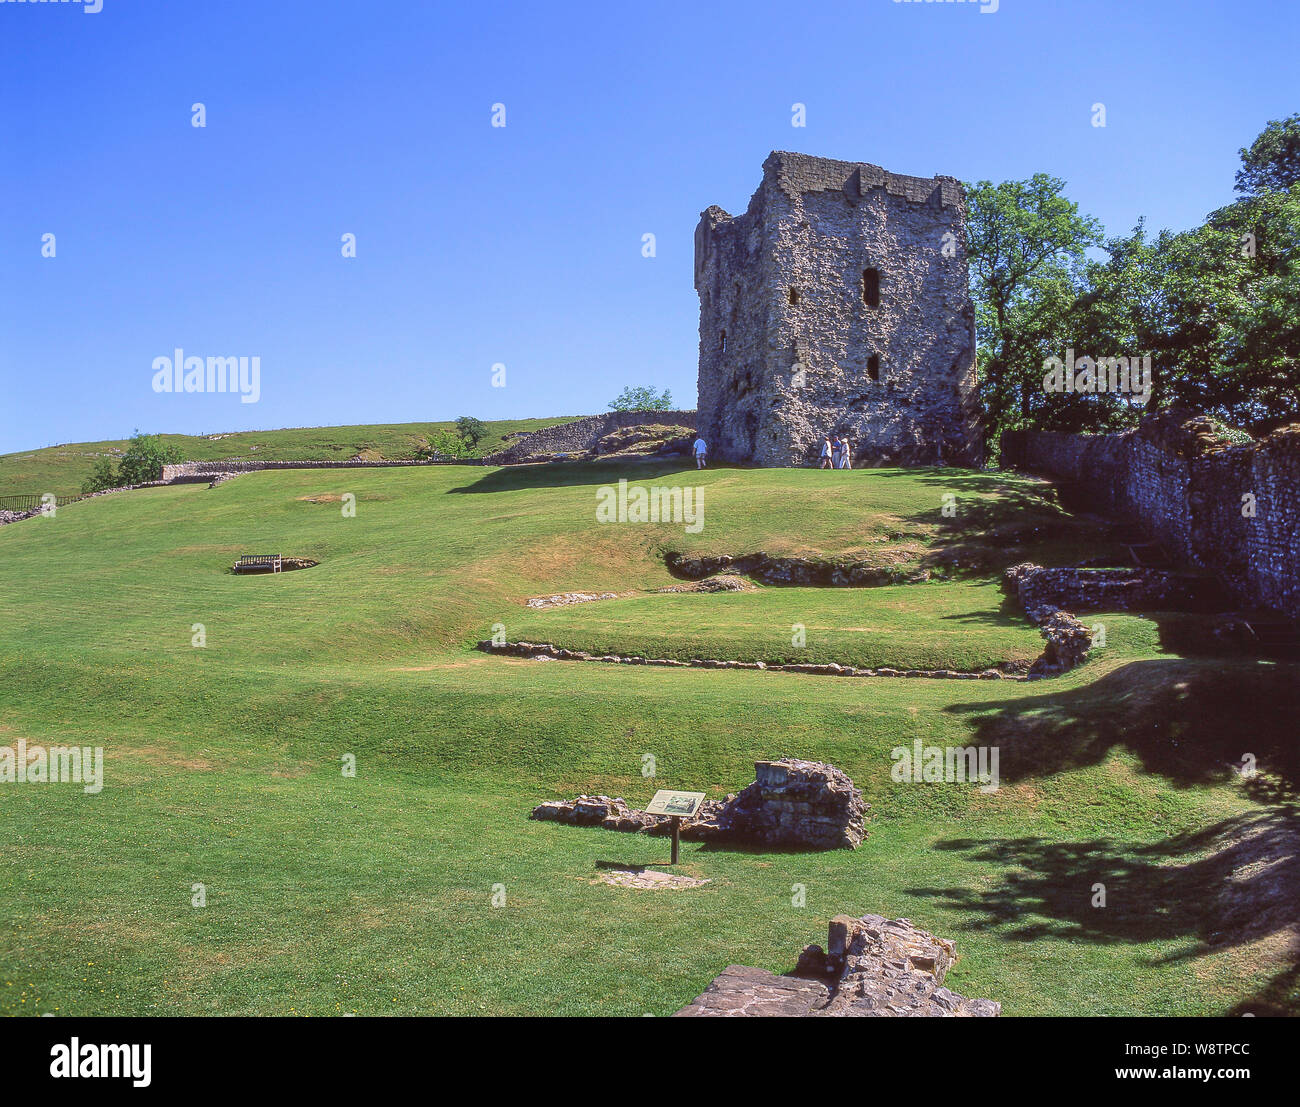 Mantener y motivos del siglo XI Peveral ruinas de castillos, Castleton, Derbyshire, Inglaterra, Reino Unido Foto de stock